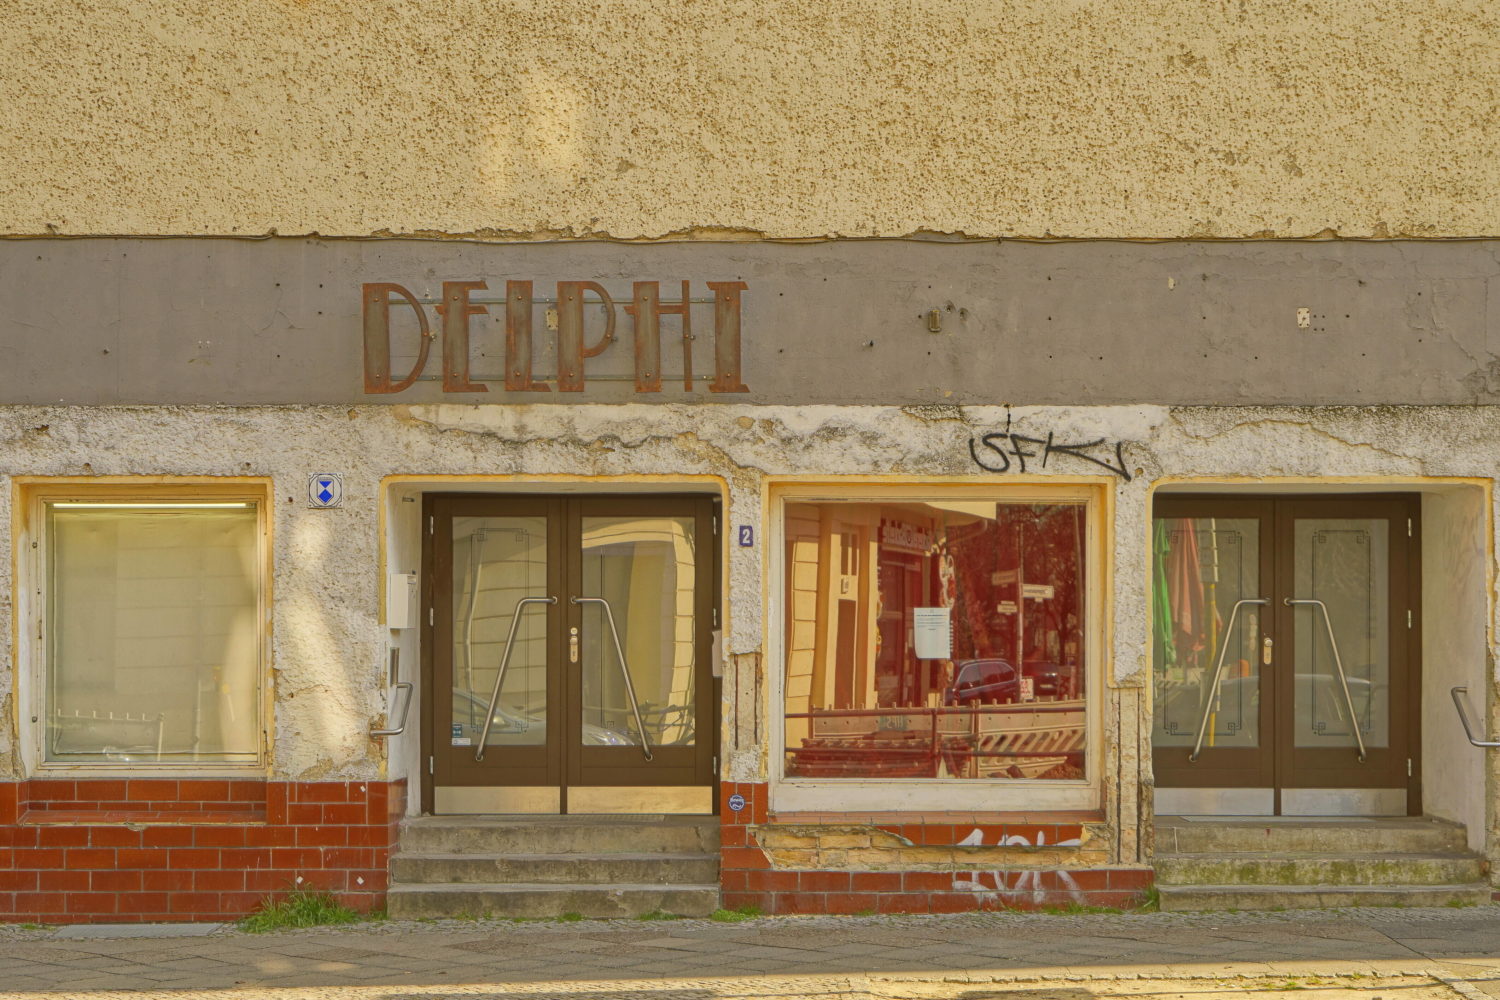 Das Theater im Delphi ist eine Institution, in die nach Jahren des Stillstands endlich wieder leben eingekehrt ist. Foto: Imago/POP-EYE